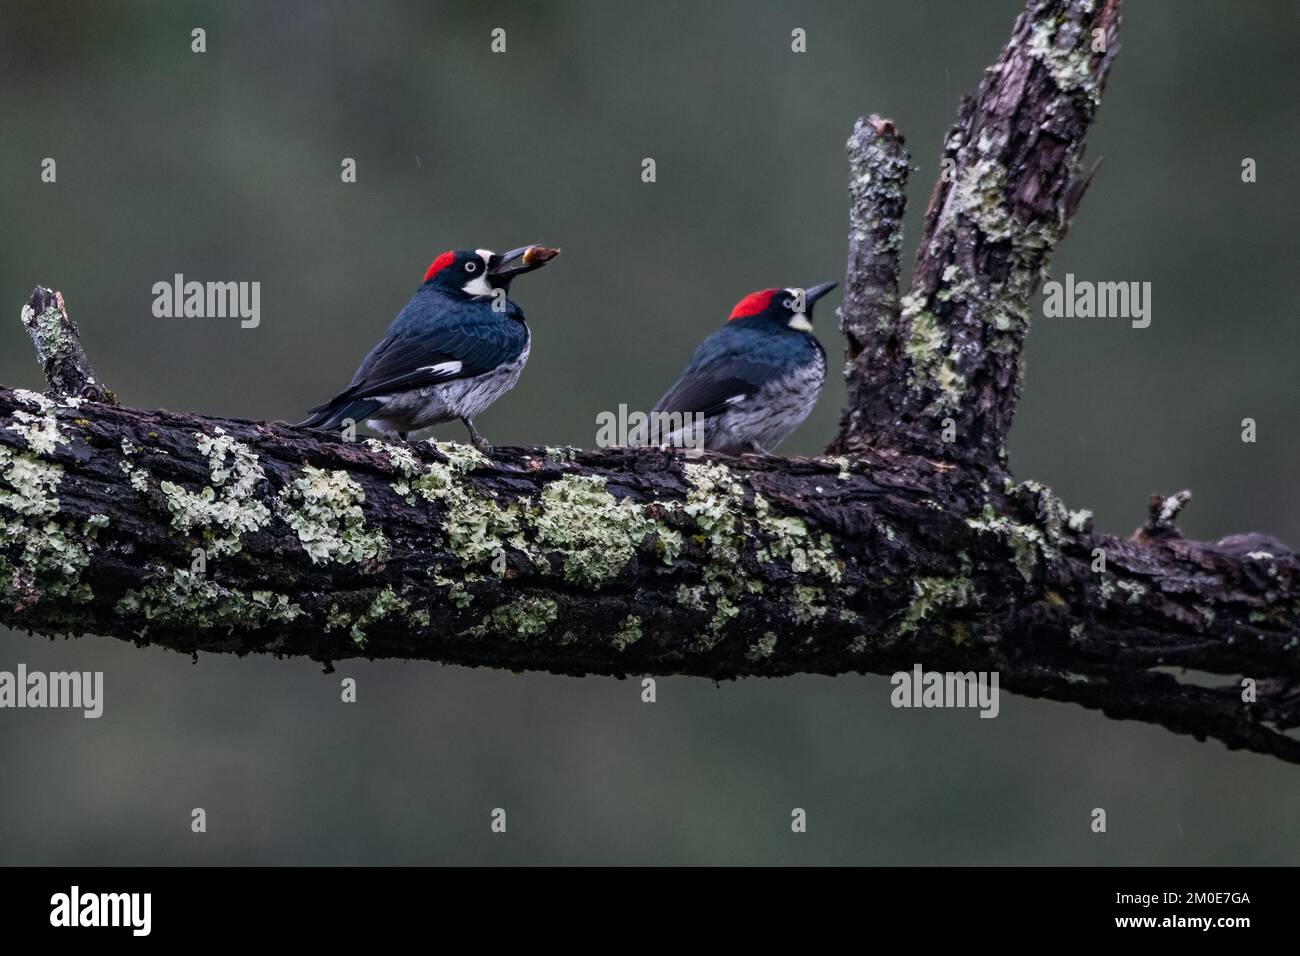 Acorn woodpeckers (Melanerpes formicivorus) du parc national sugarload Ridge dans le comté de Sonoma, en Californie. Banque D'Images